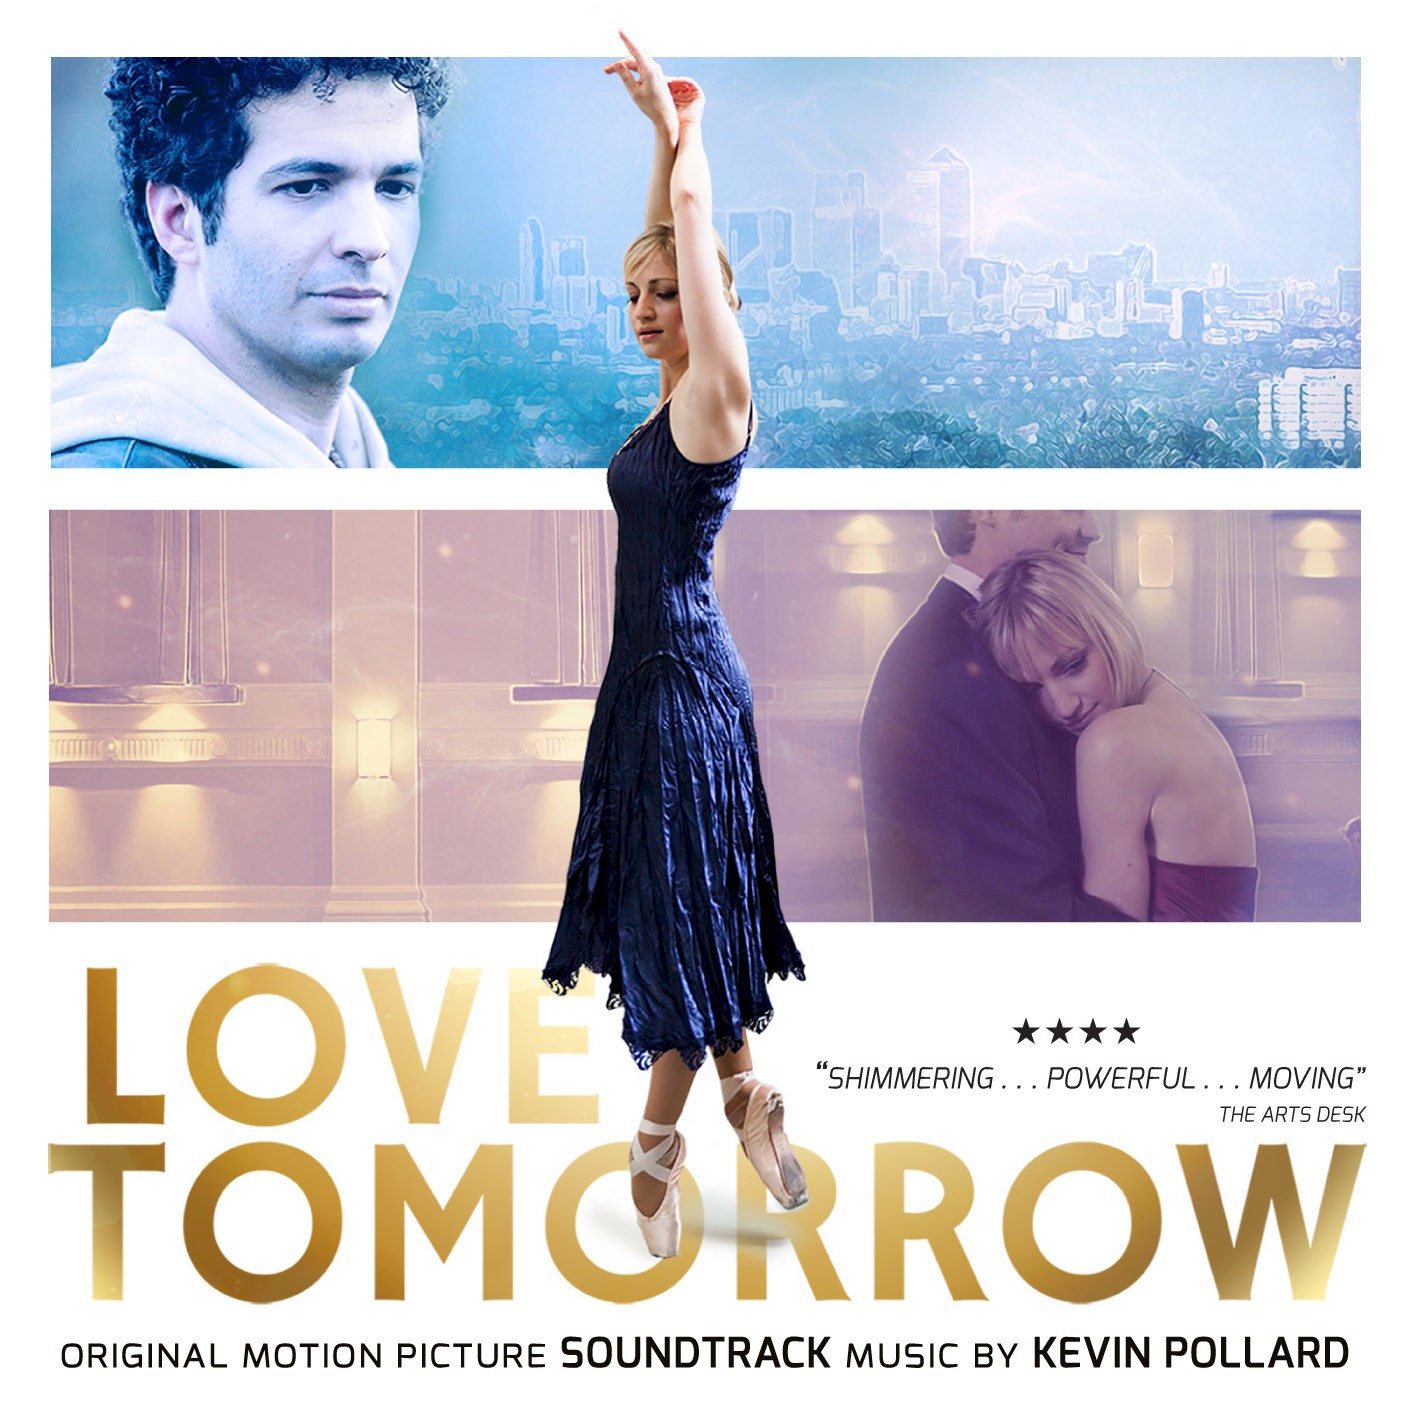 * Love Tomorrow Soundtrack now on iTunes & Amazon!